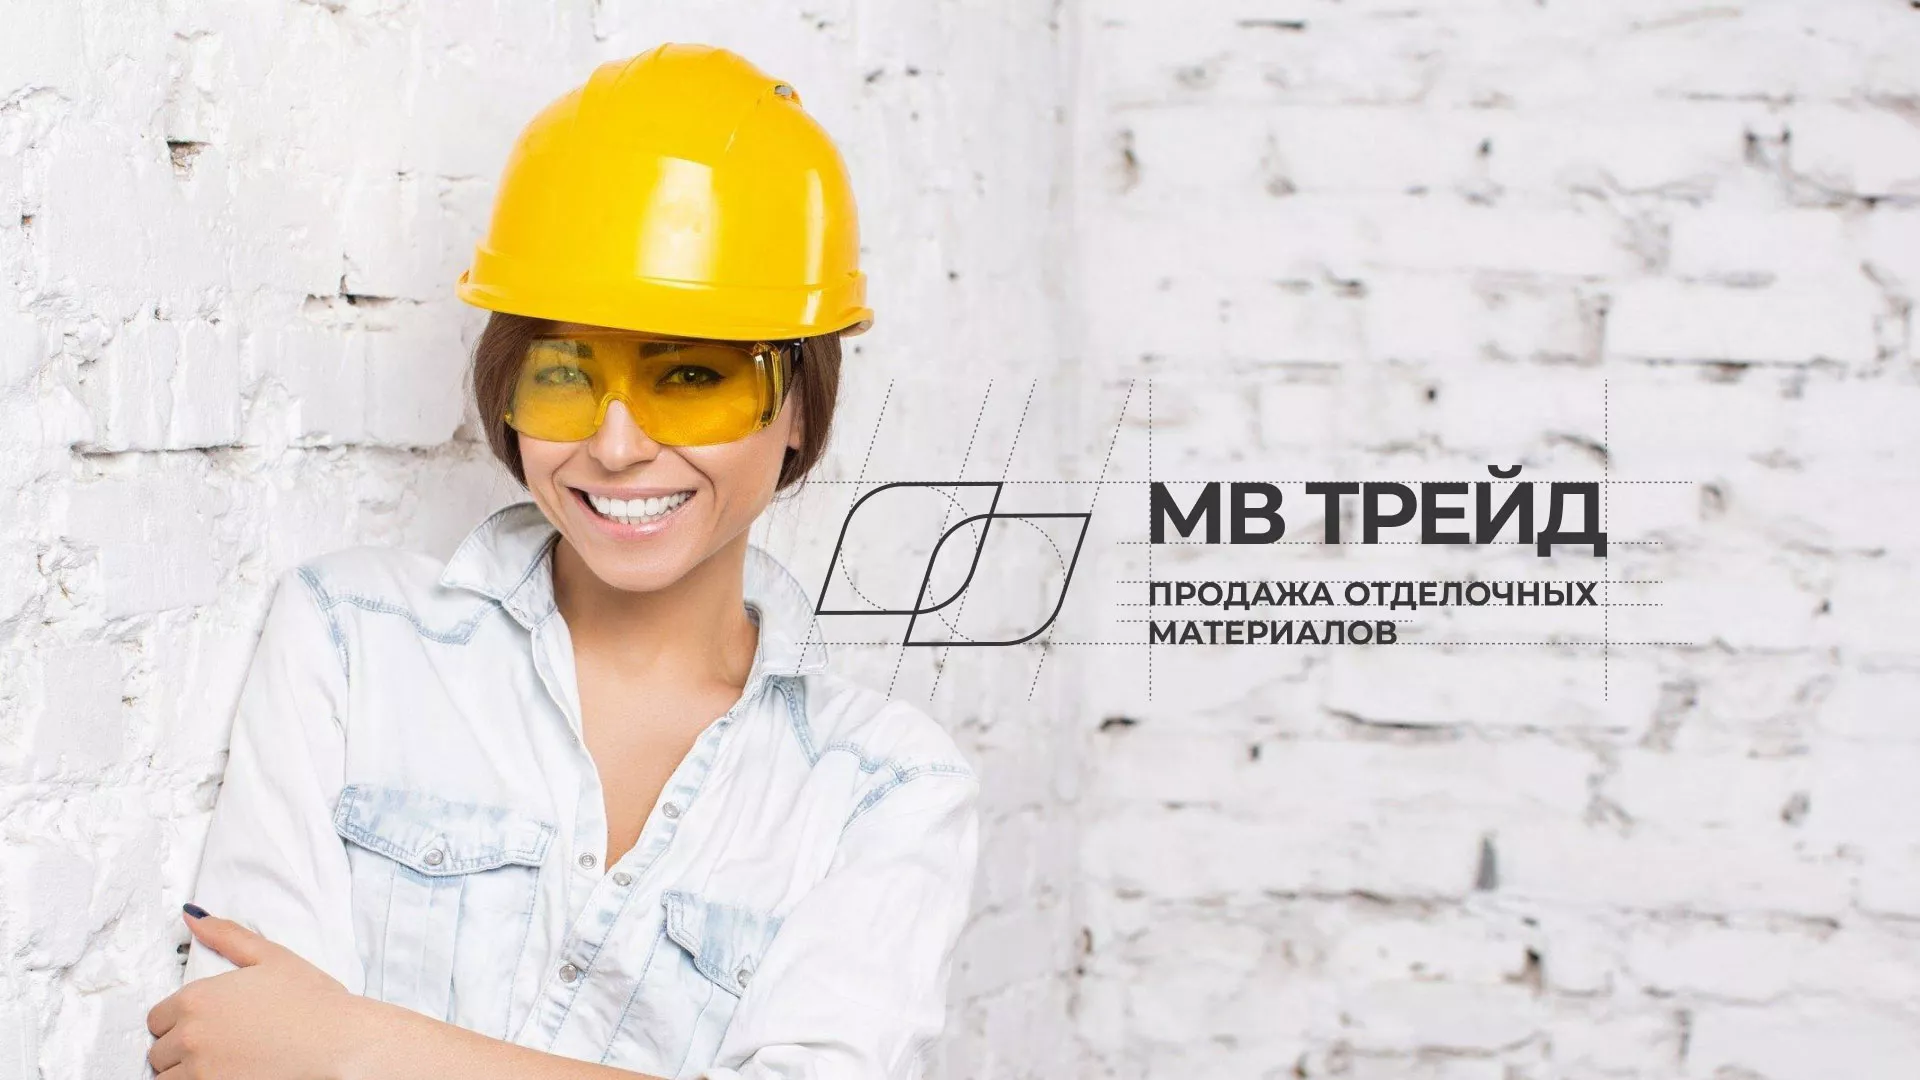 Разработка логотипа и сайта компании «МВ Трейд» в Соколе